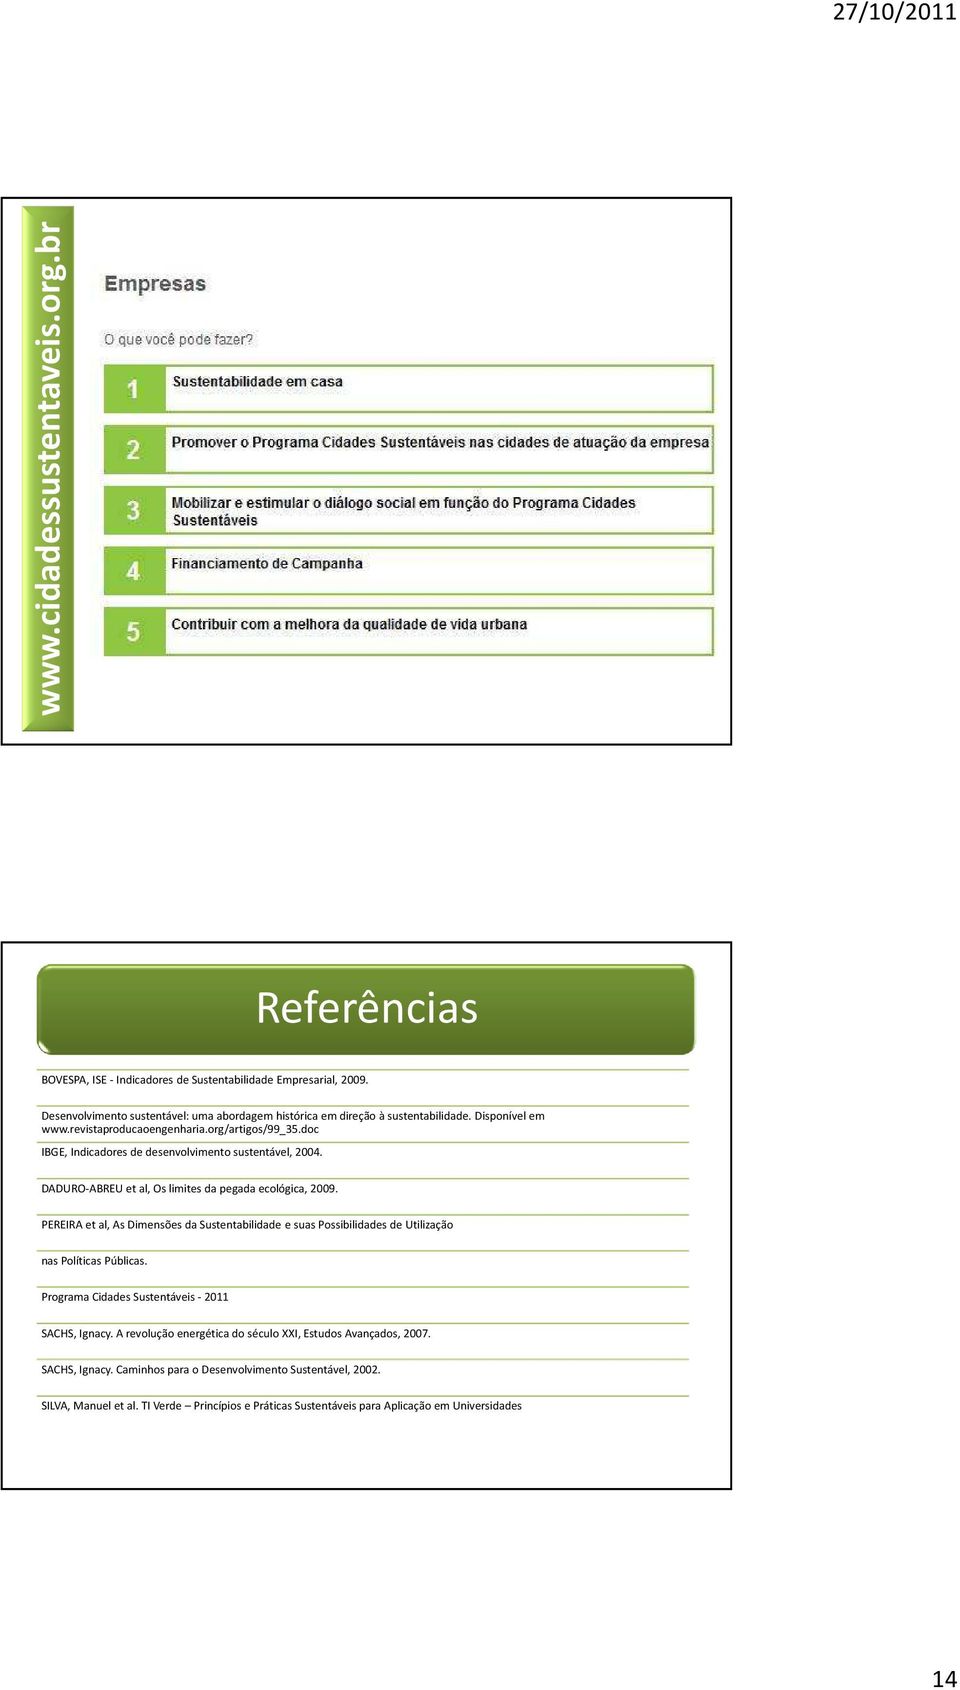 doc IBGE, Indicadores de desenvolvimento sustentável, 2004. DADURO-ABREU et al, Os limites da pegada ecológica, 2009.